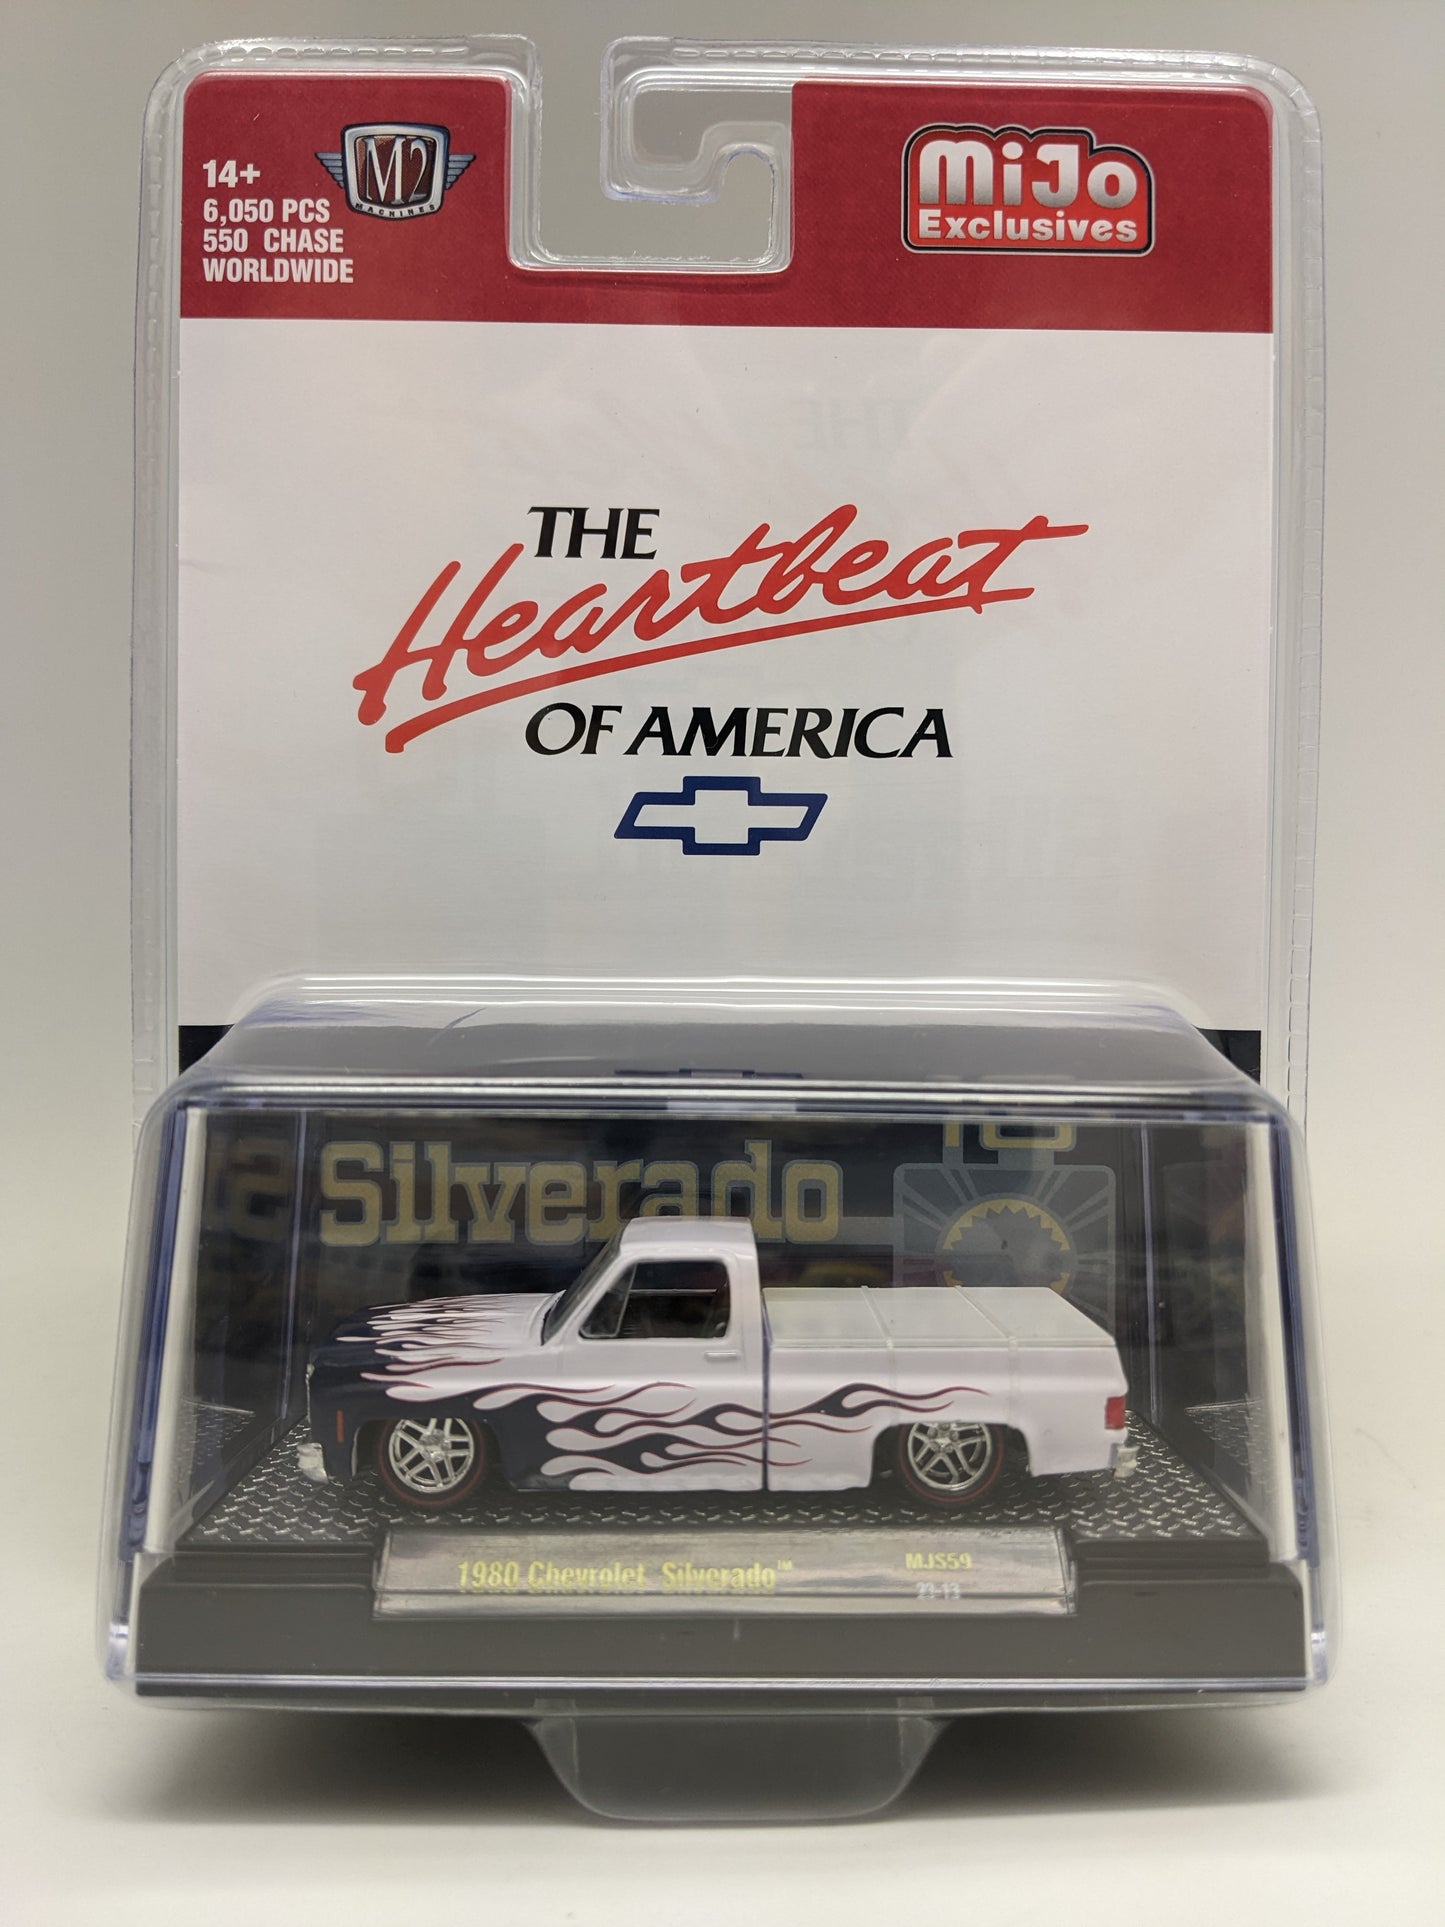 M2 1980 Chevrolet Silverado - Heartbeat of America - MiJo Exclusive